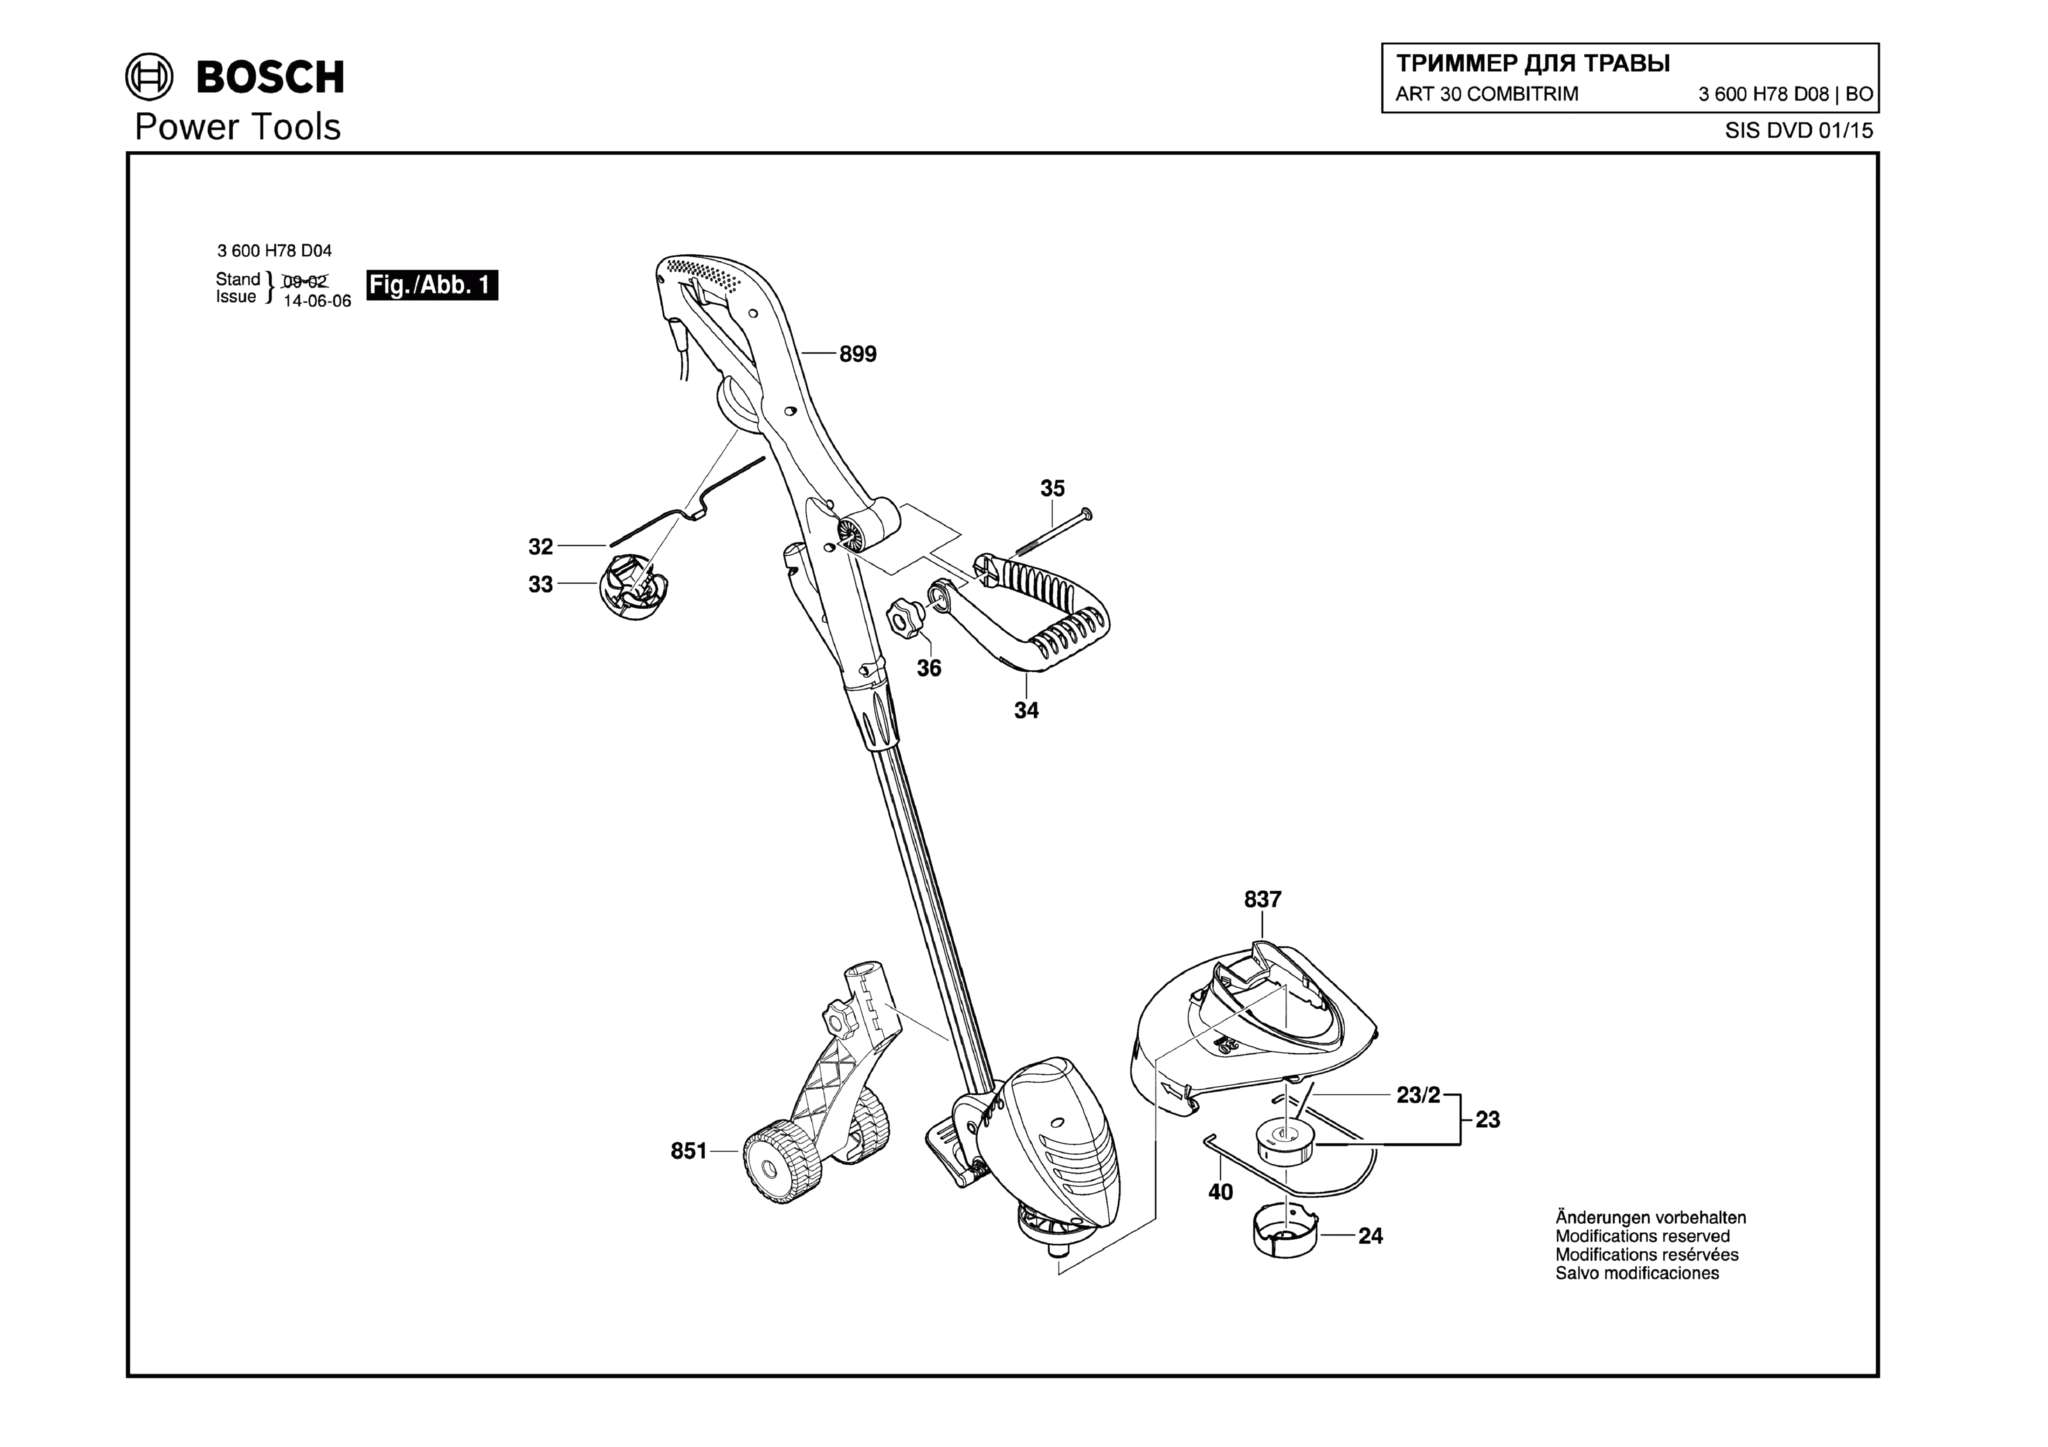 Запчасти, схема и деталировка Bosch ART 30 COMBITRIM (ТИП 3600H78D08)